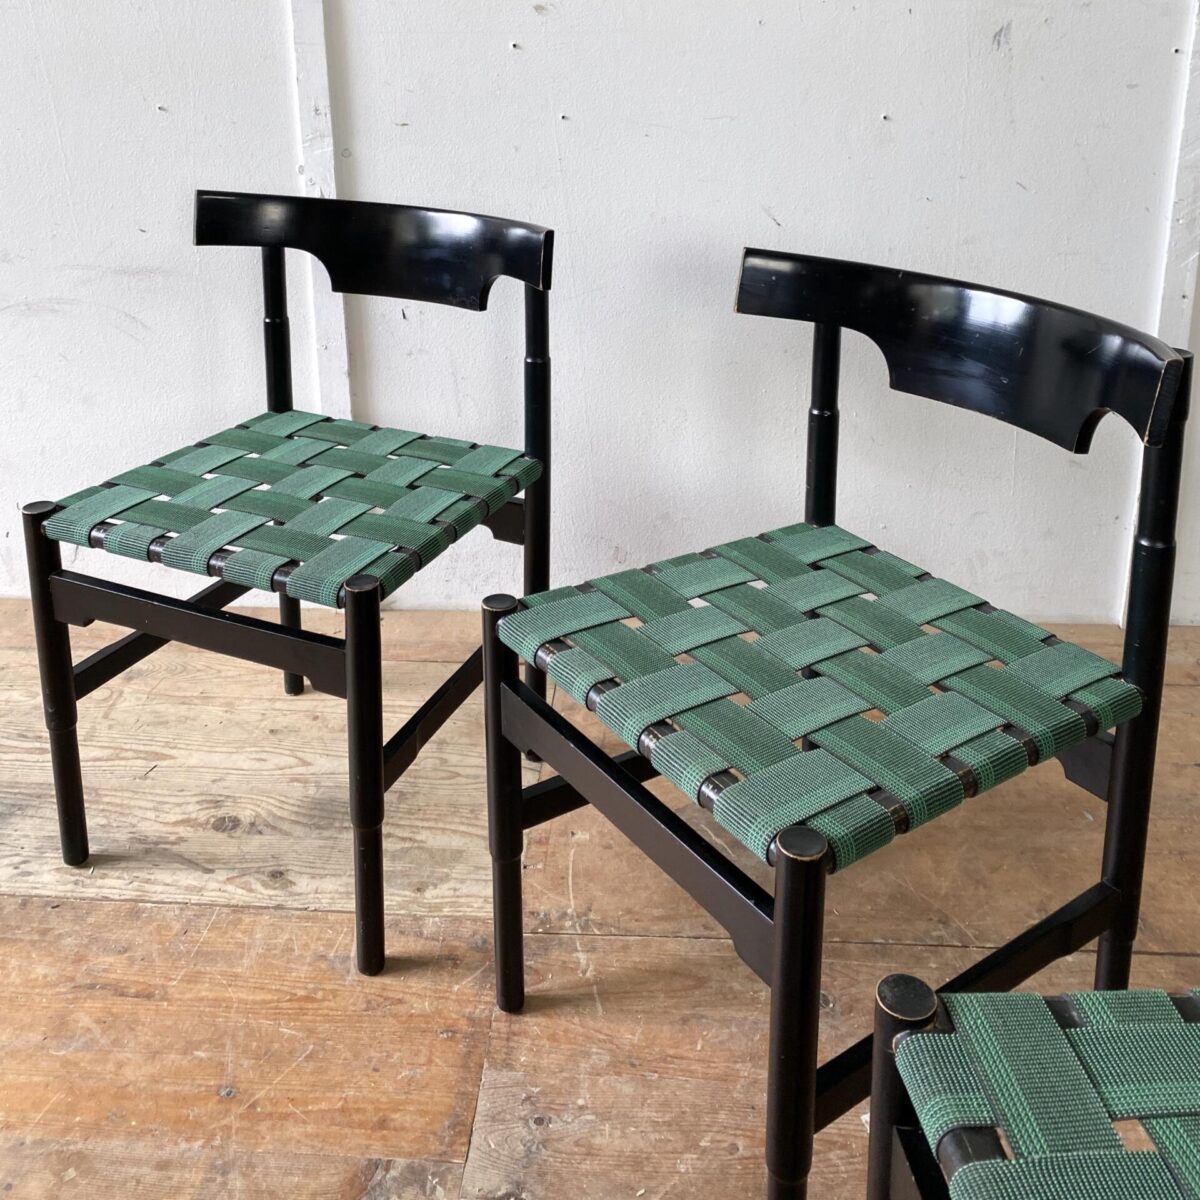 Deuxieme.shop swissdesign Willy Guhl Stühle. 4er Set Esszimmer Stühle. Buchenholz schwarz lackiert, Sitzfläche mit Gummi Bändern bespannt. Die Stühle sind in stabilem guten vintage Zustand. Ein Hersteller ist nicht bekannt. 